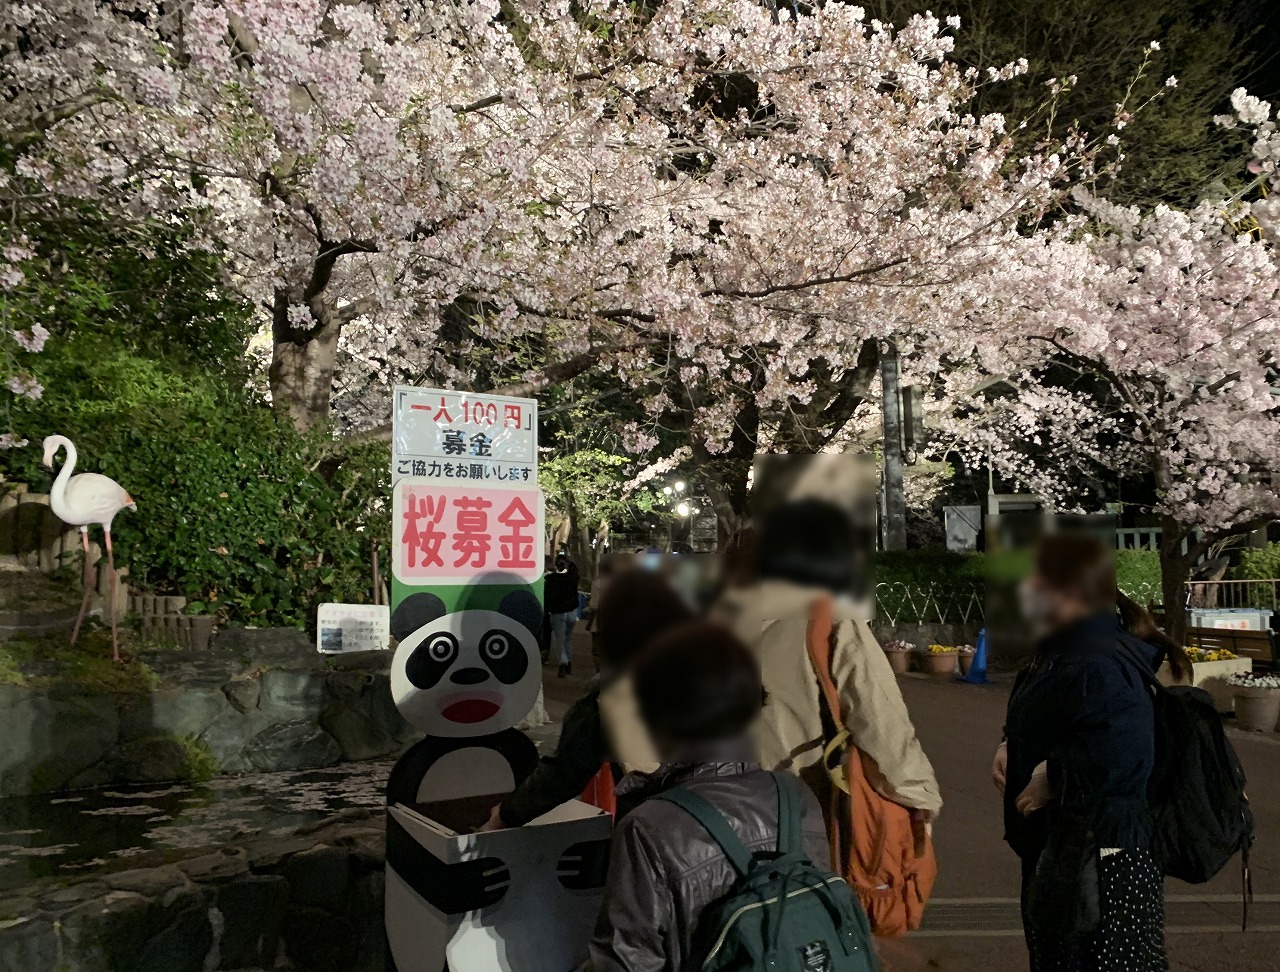 募金・神戸市立王子動物園 夜桜の通り抜け